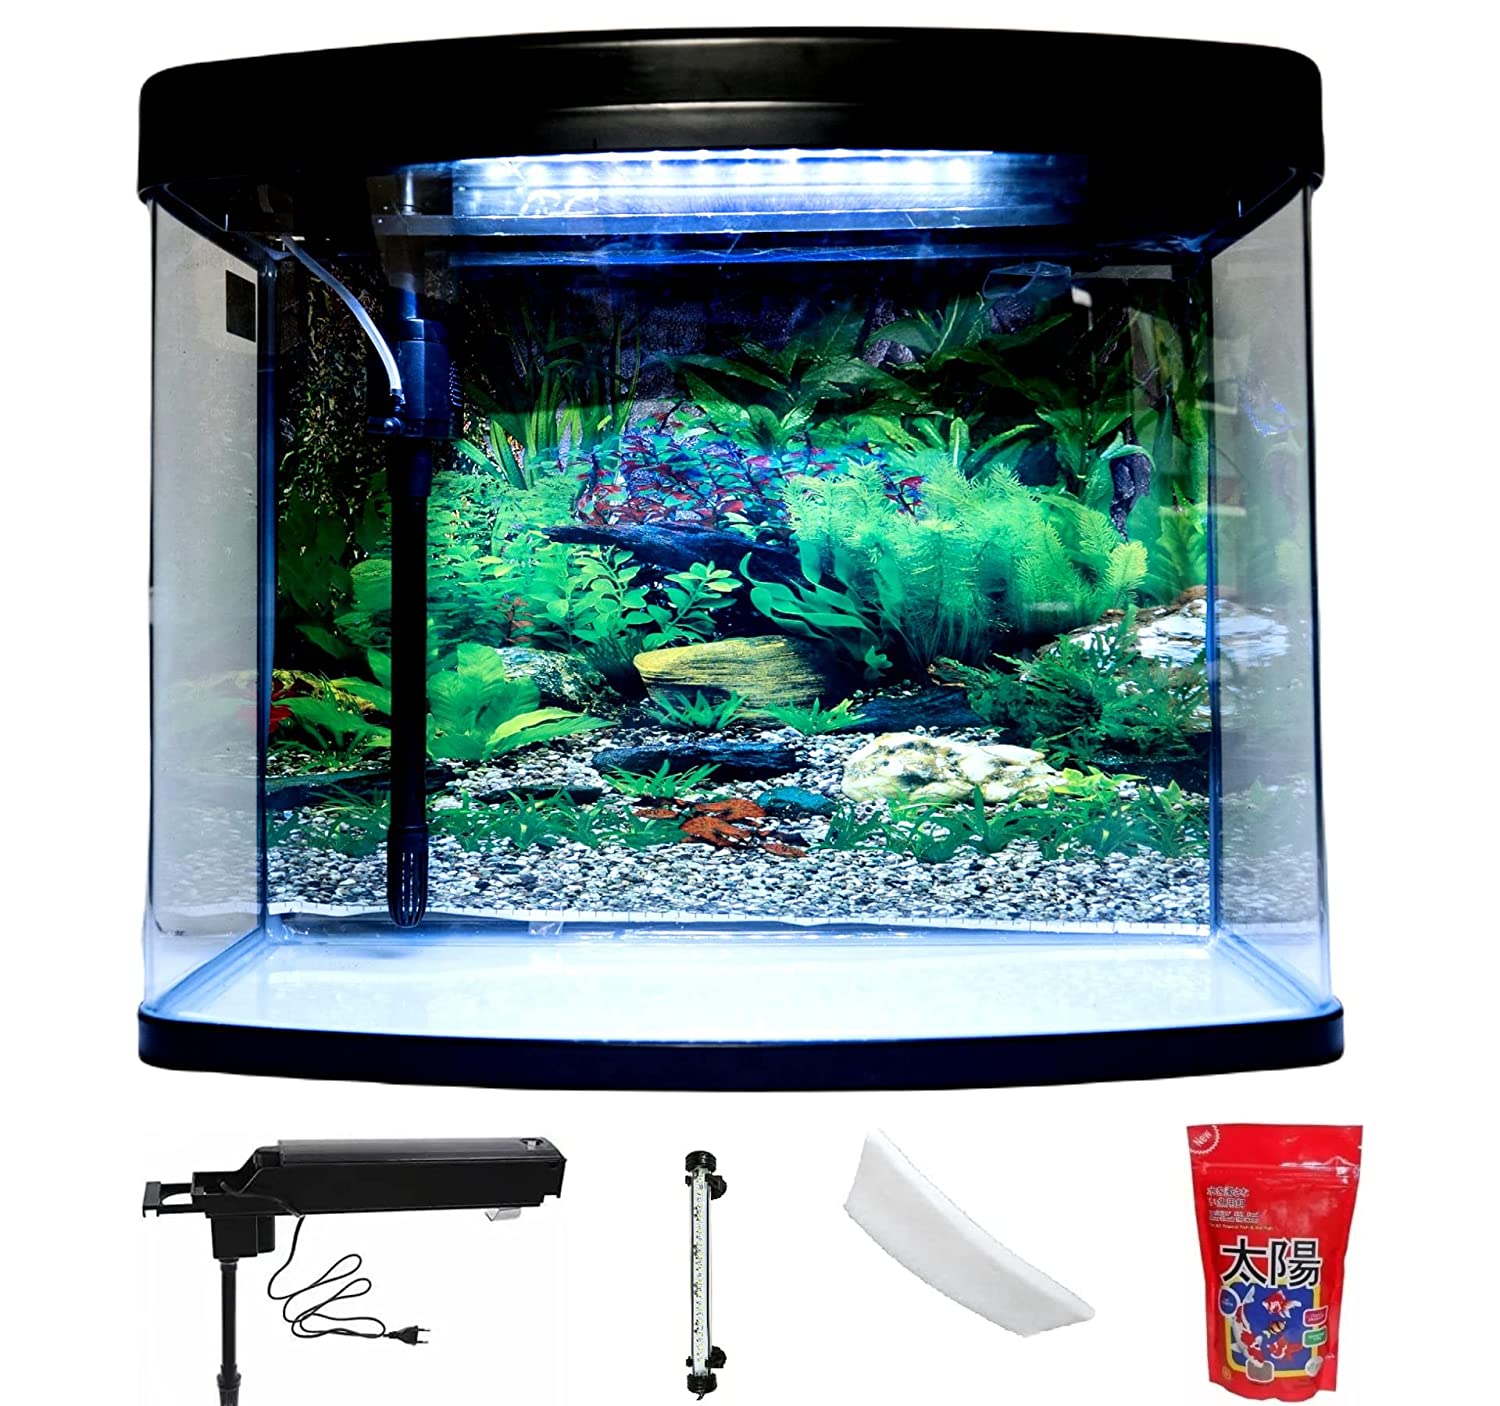 Despacito 32 Litre Aquarium Fish Tank for Home Big Size with Led Light,Filter Sponge and inbuilt Pump (Size: 39x24x37cm)